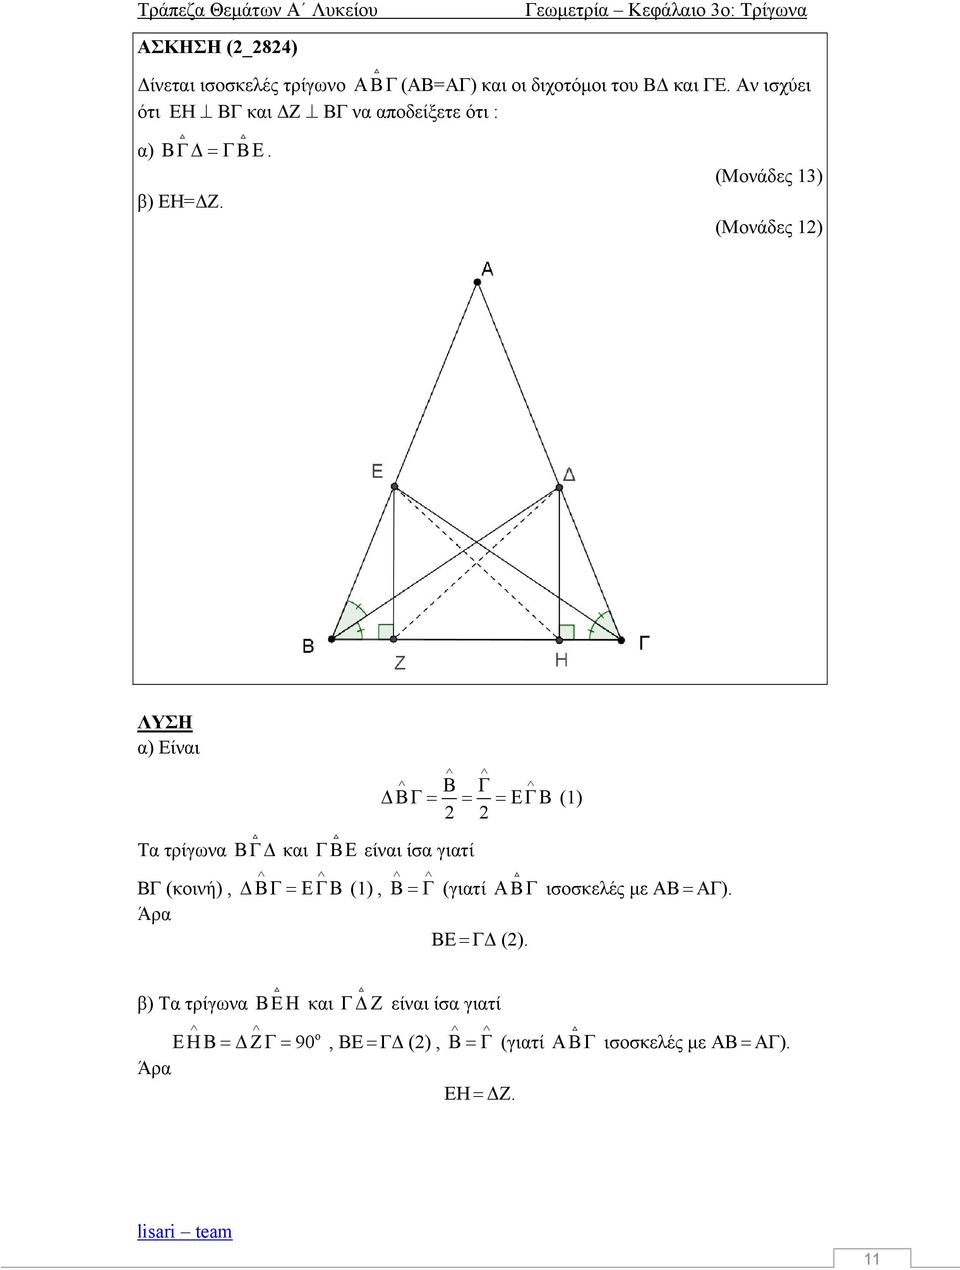 (Μνάδες 13) (Μνάδες 12) ΛΥΣΗ α) Είναι Τα τρίγωνα Γ και Β είναι ίσα γιατί ΒΓ (κινή), Άρα (1), (1) 2 2